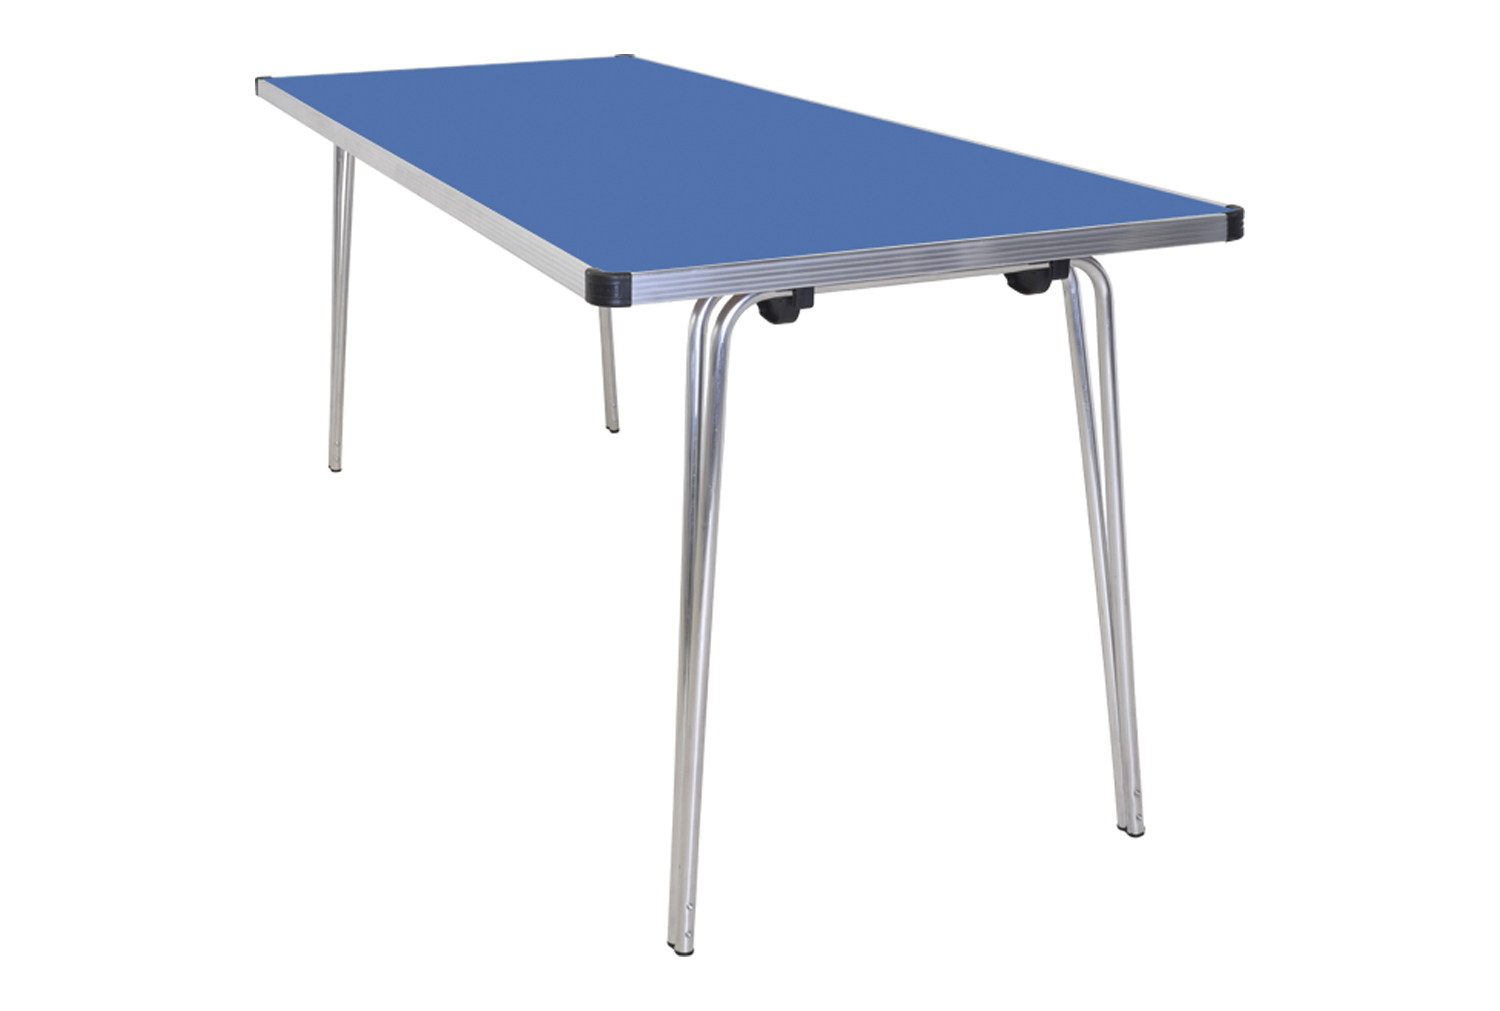 Gopak Contour Plus Folding Table, 183wx76d (cm), Azure Blue